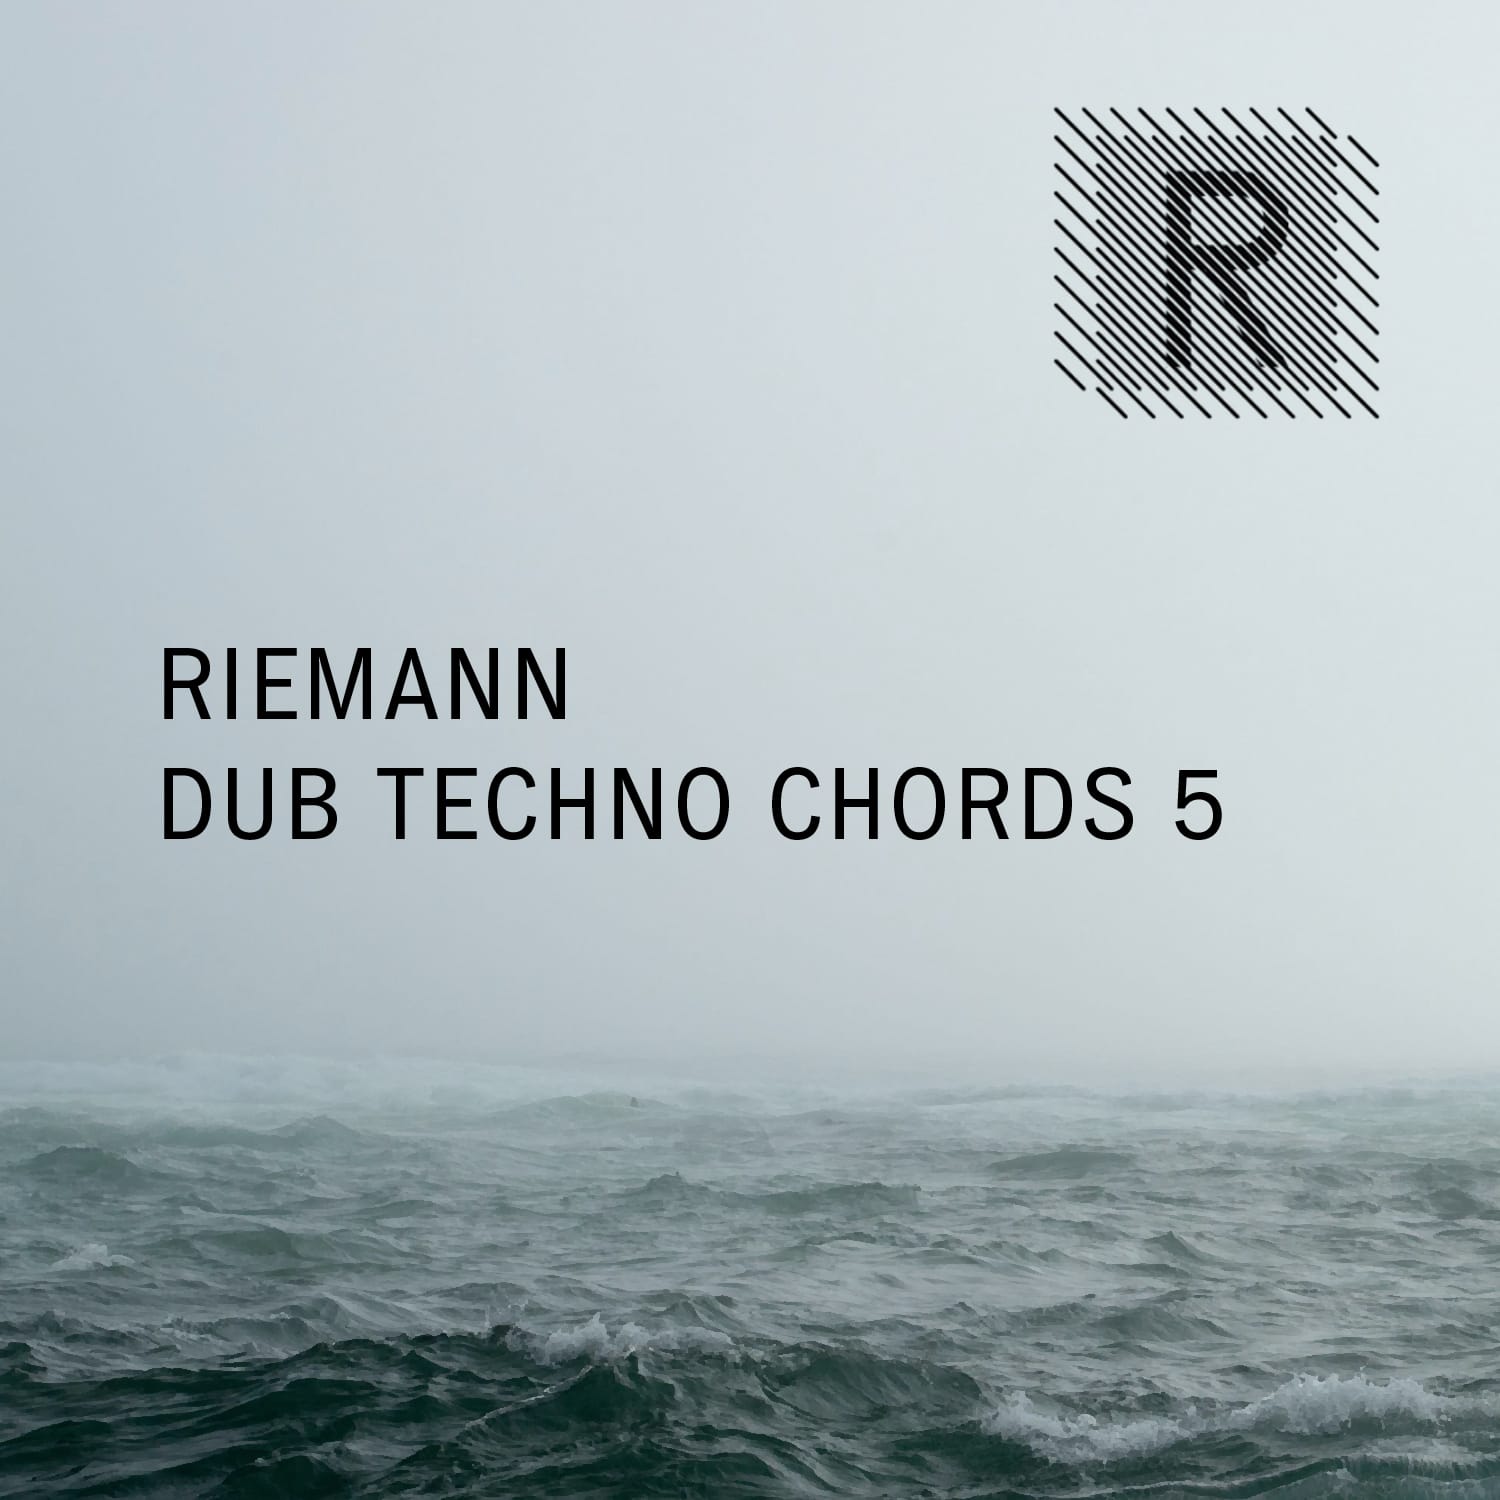 Riemann Dub Techno Chords 5 Cover Artwork